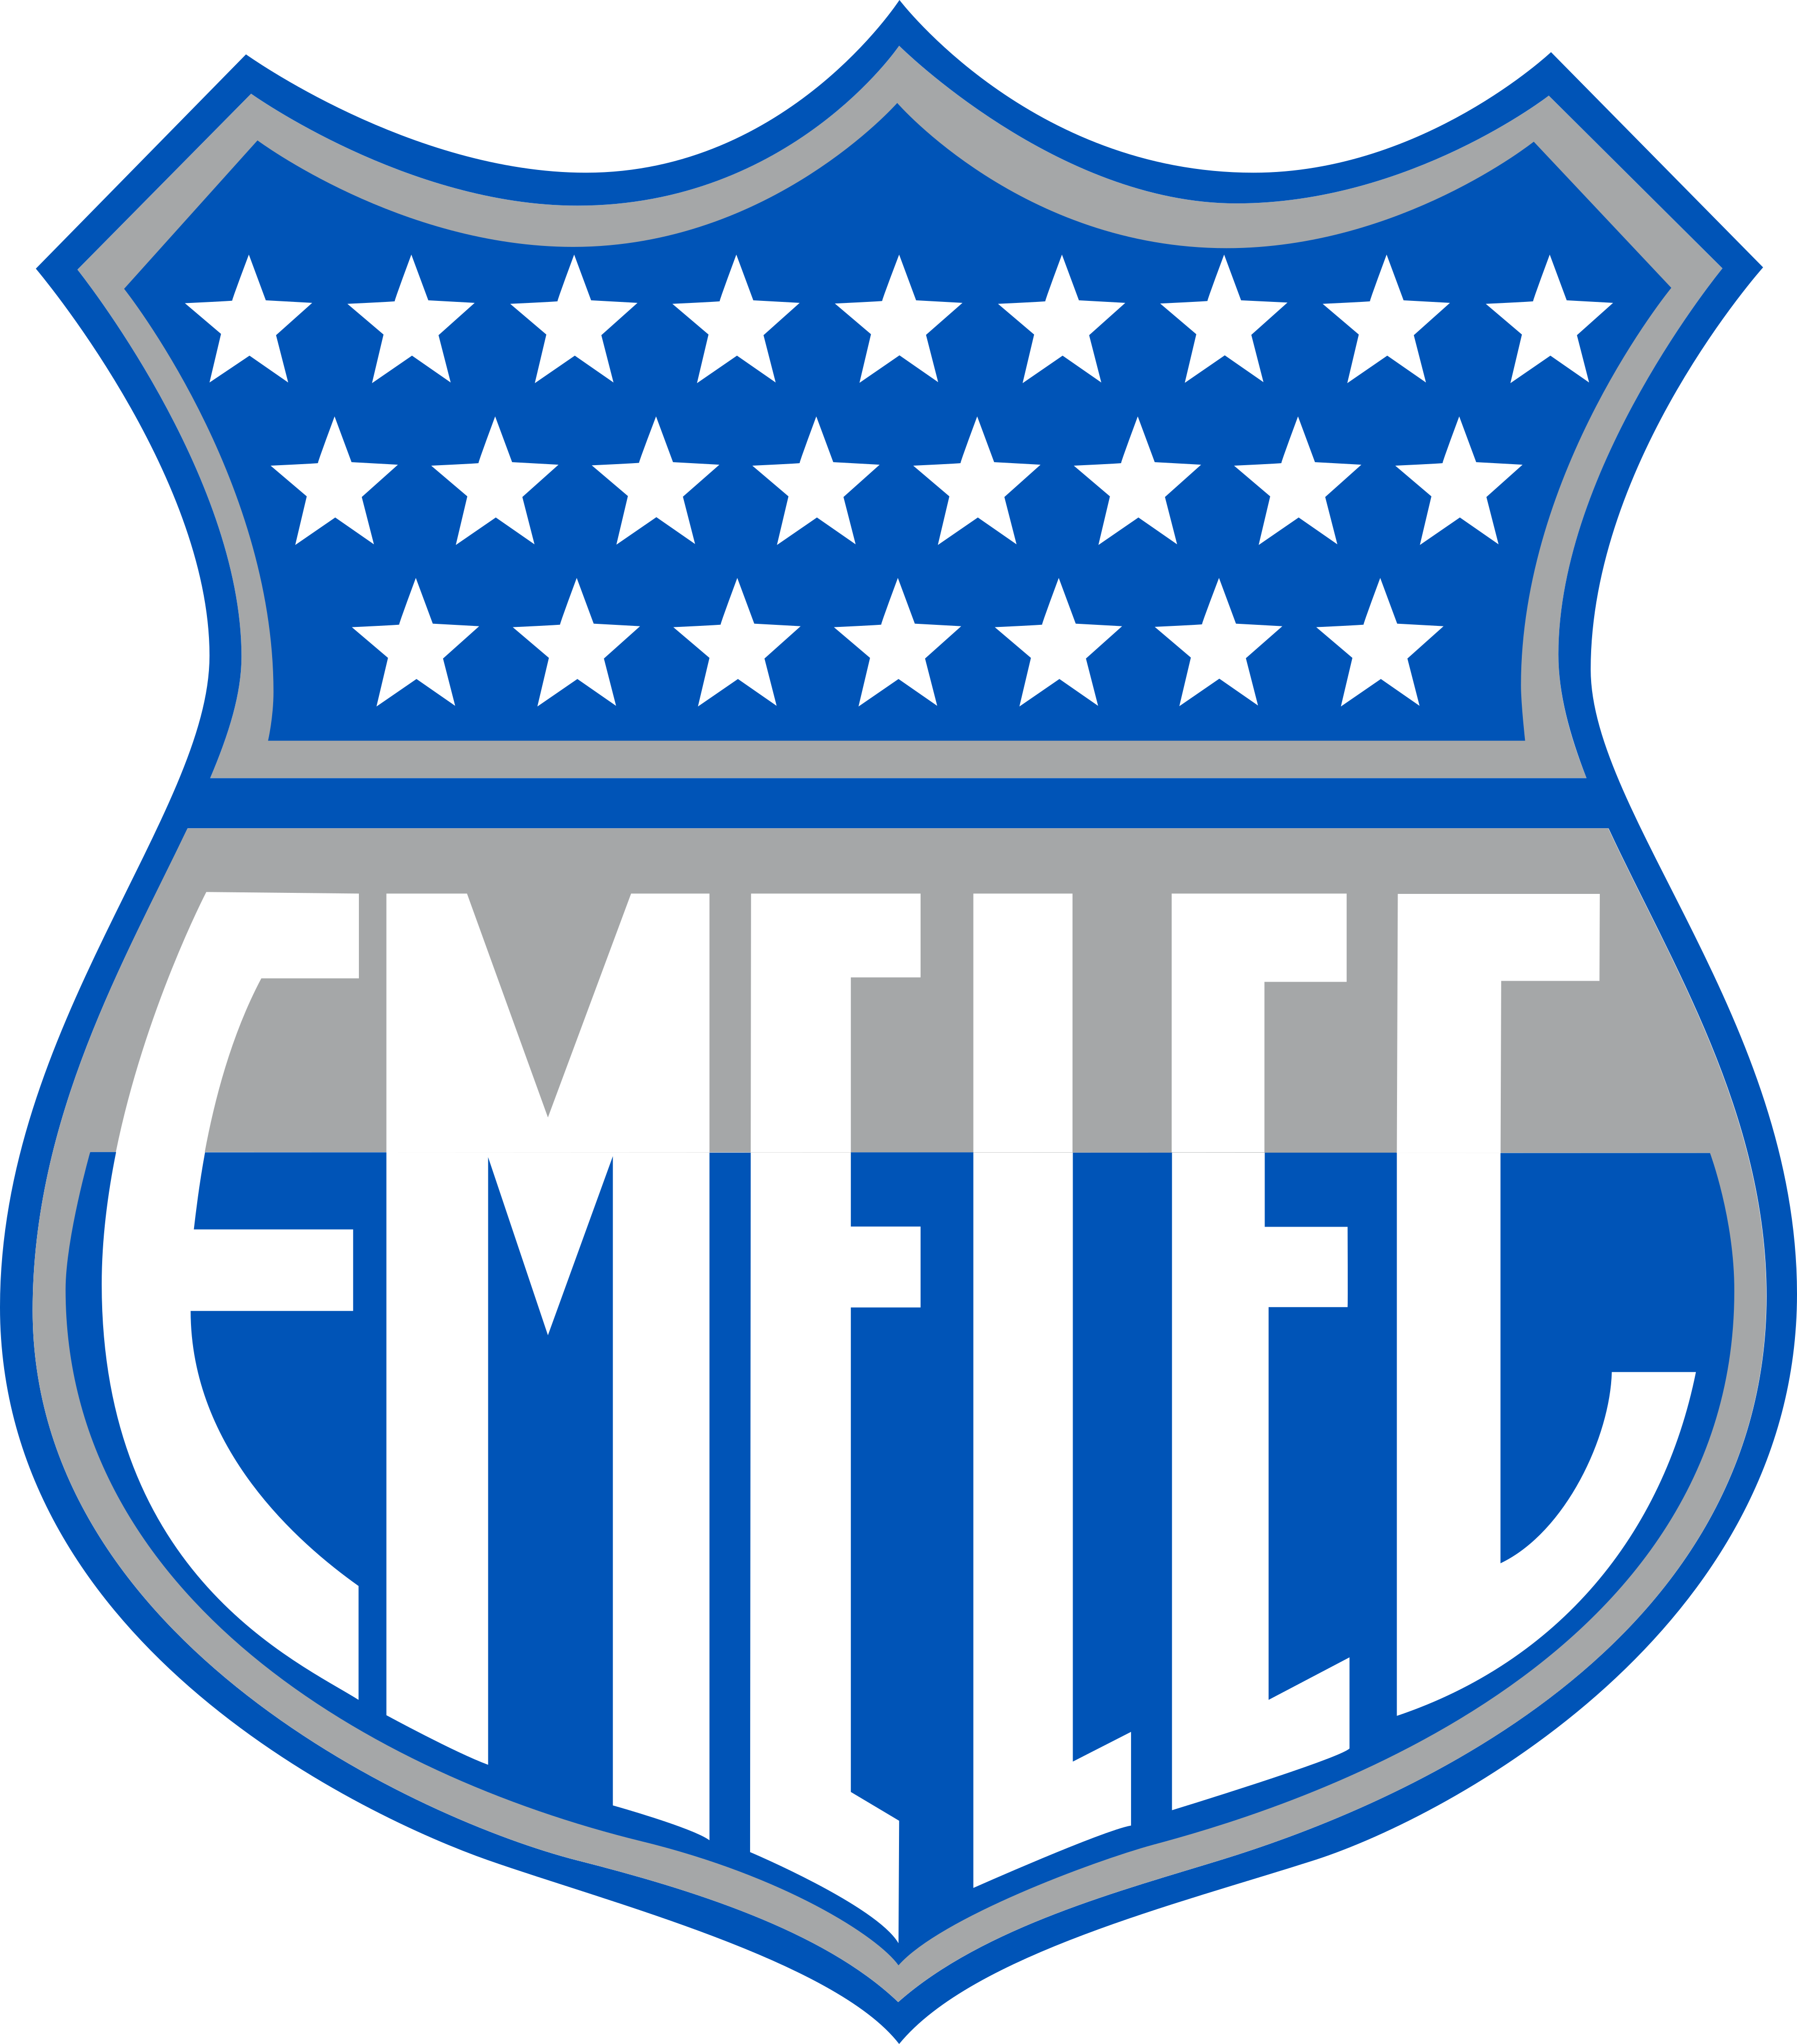 Emelec Logo Escudo.